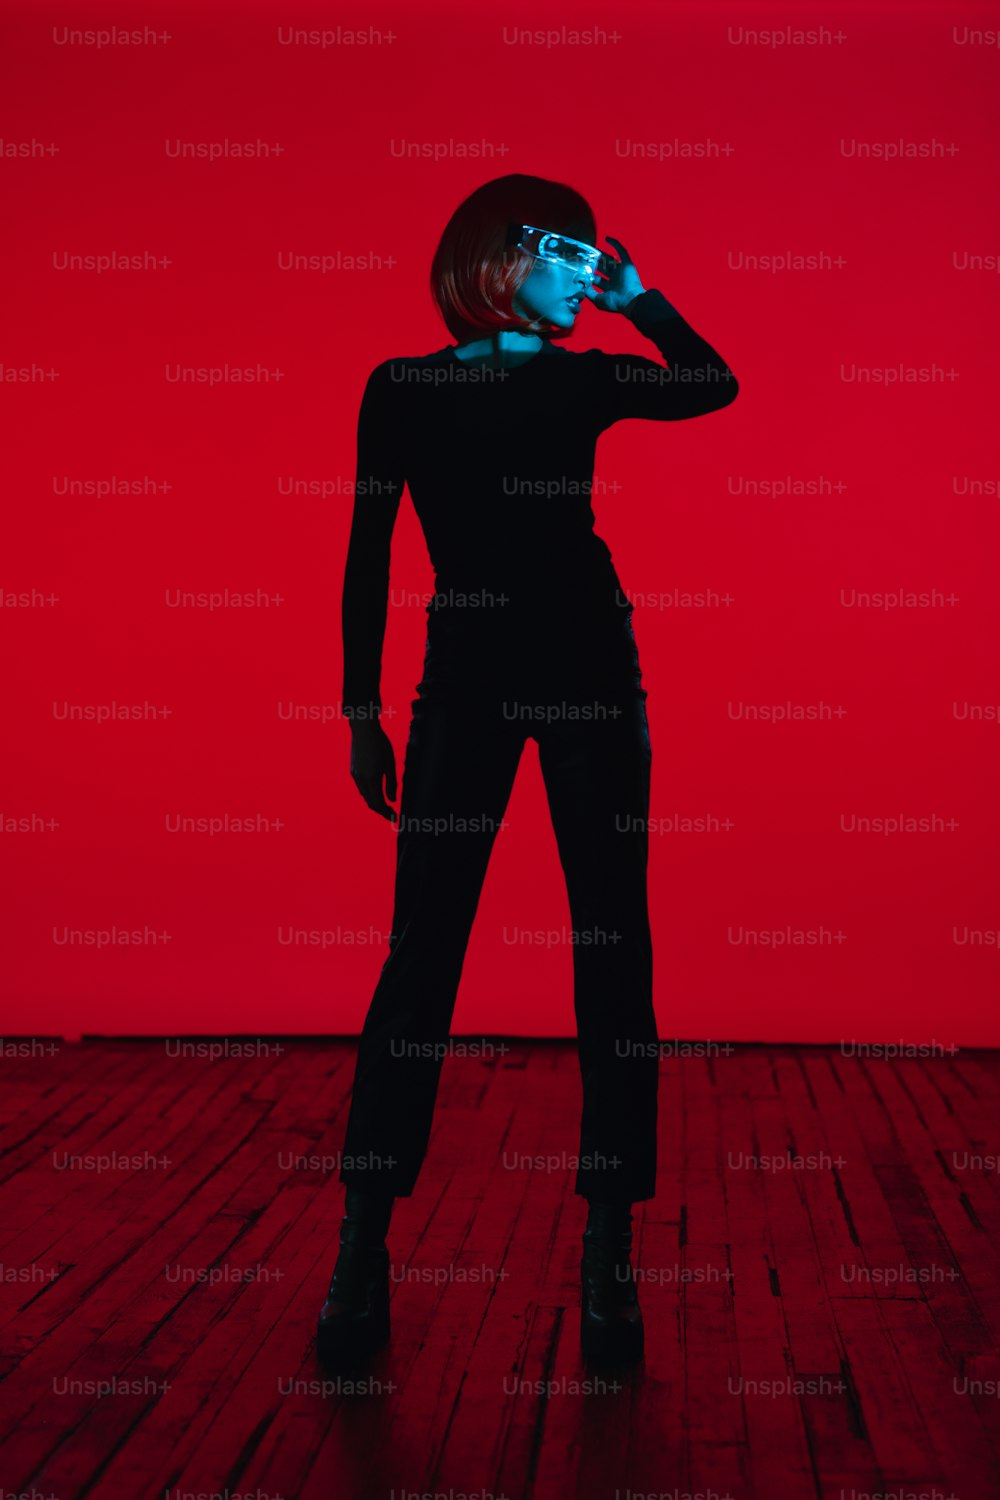 Una mujer parada en un piso de madera frente a una pared roja